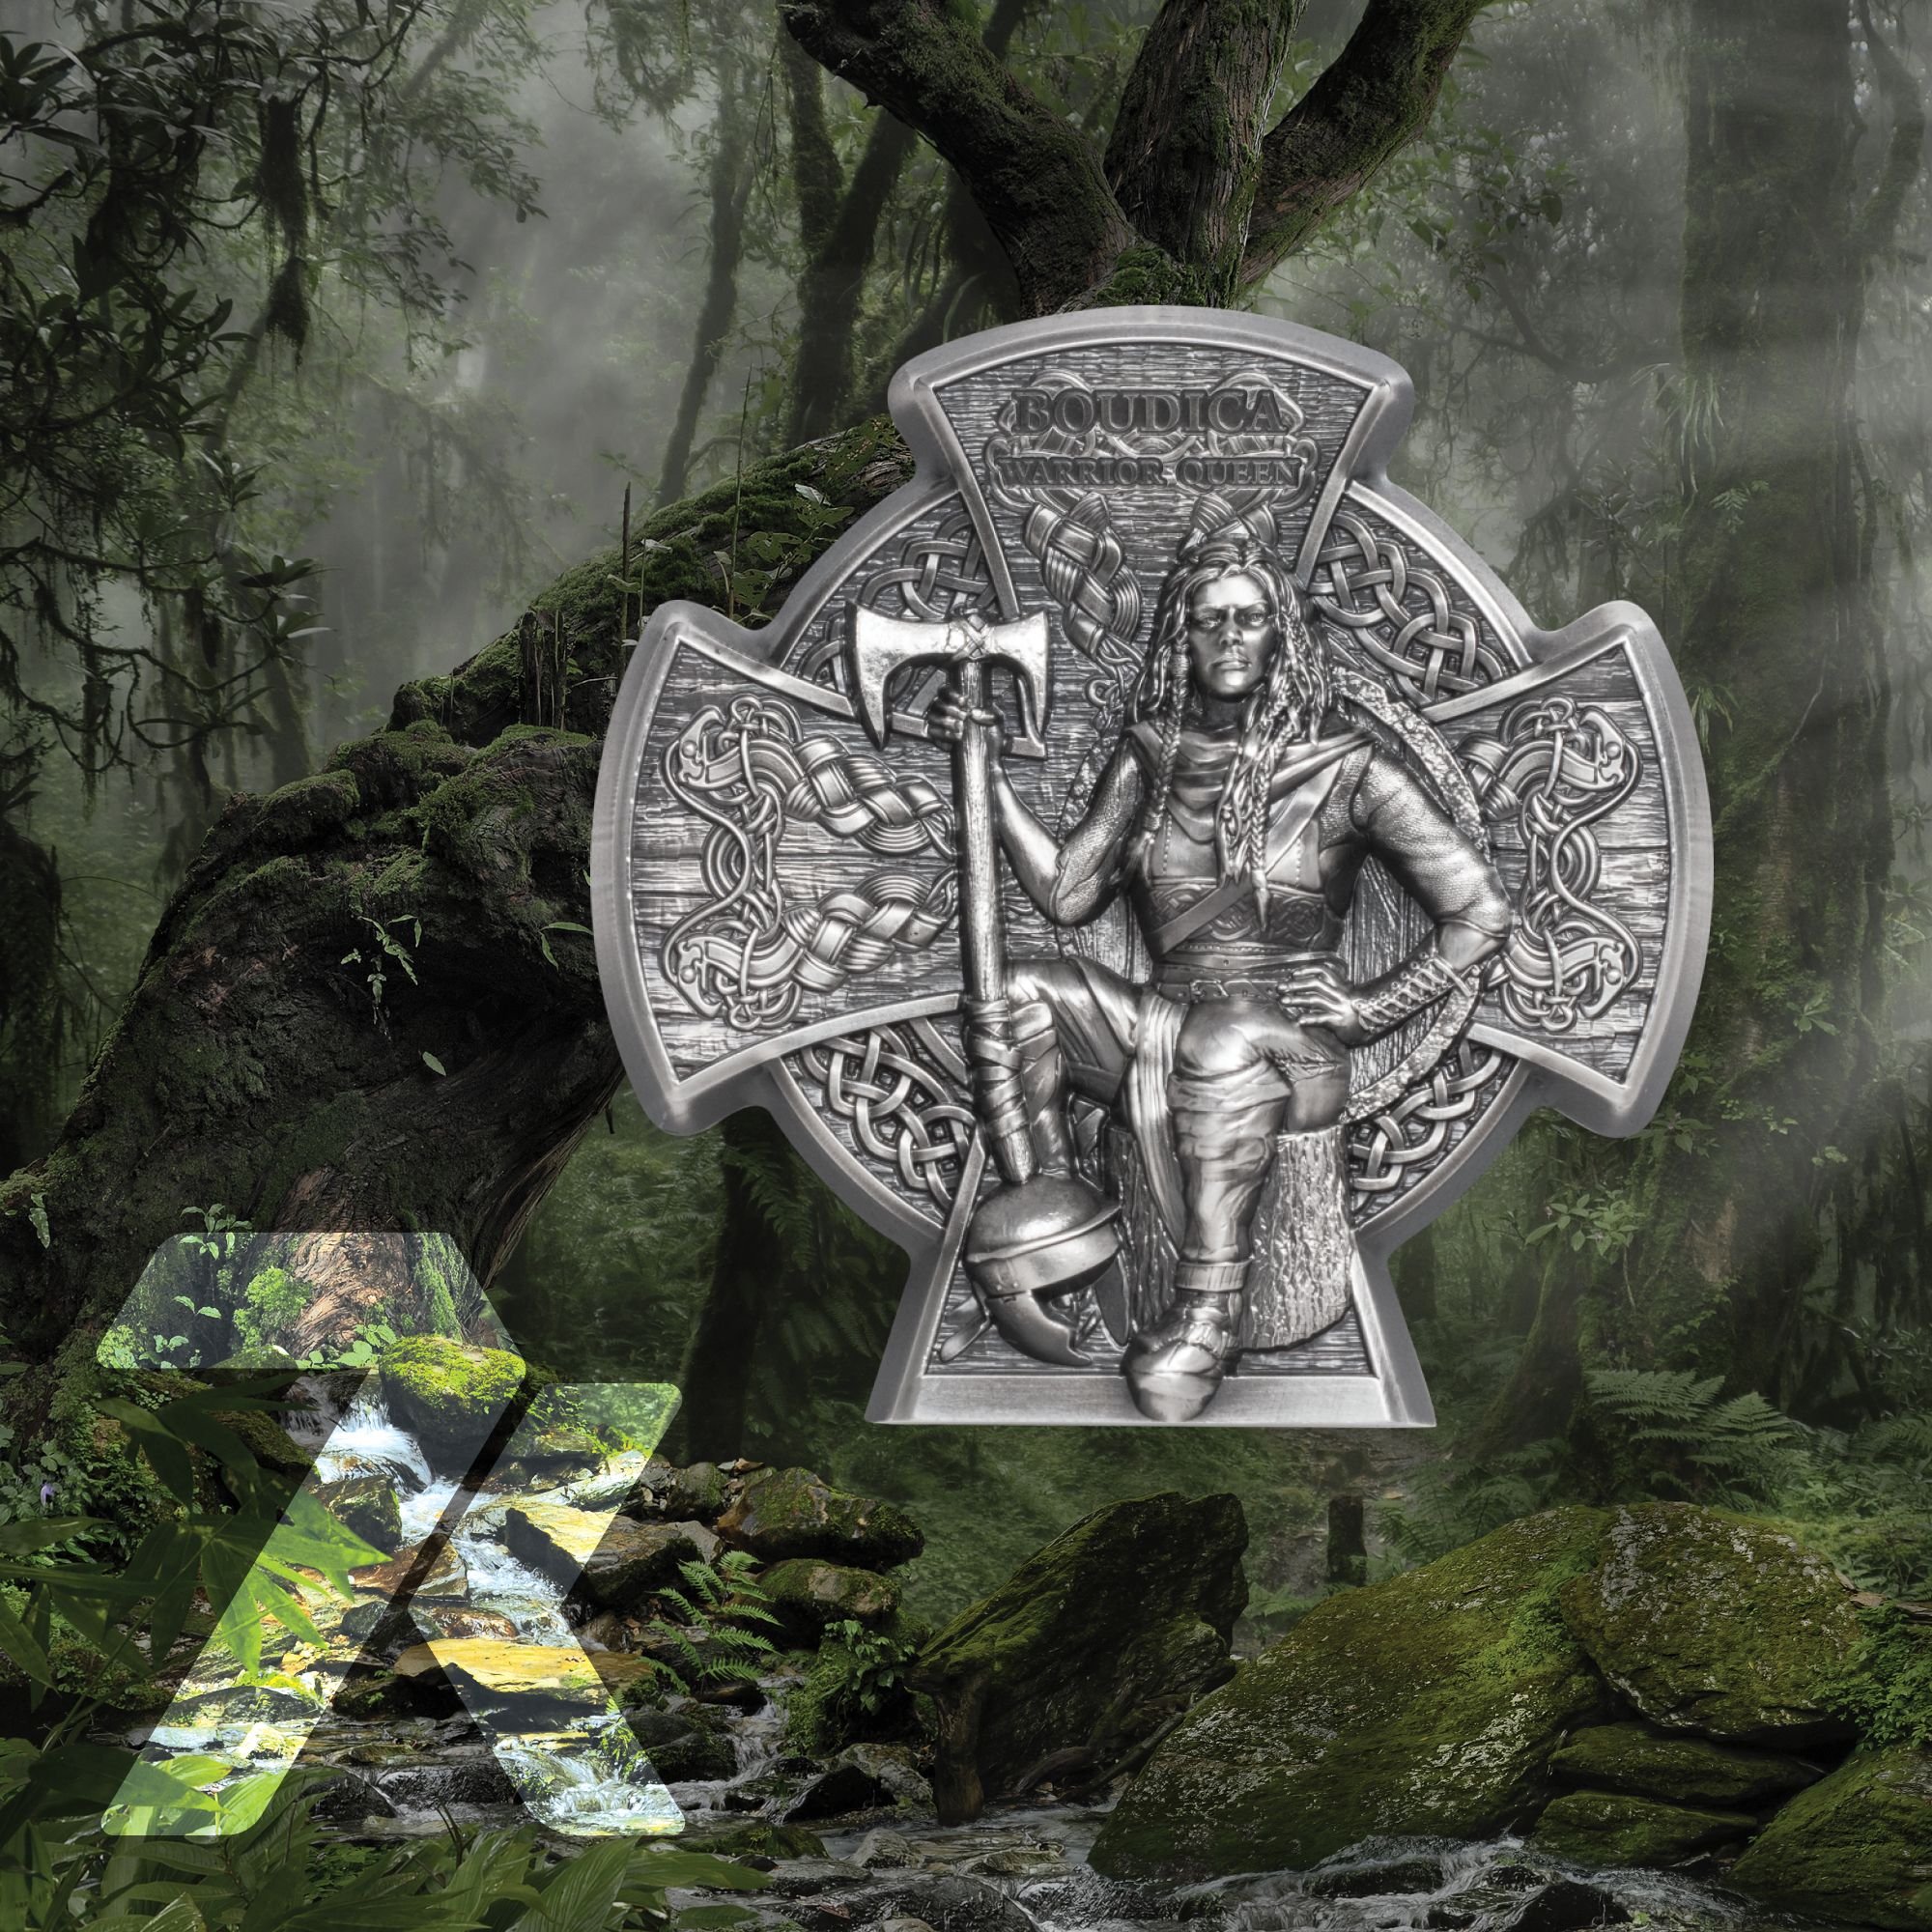 2020 Warriors Boudica Warrior Queen 3 oz Silver Coin 